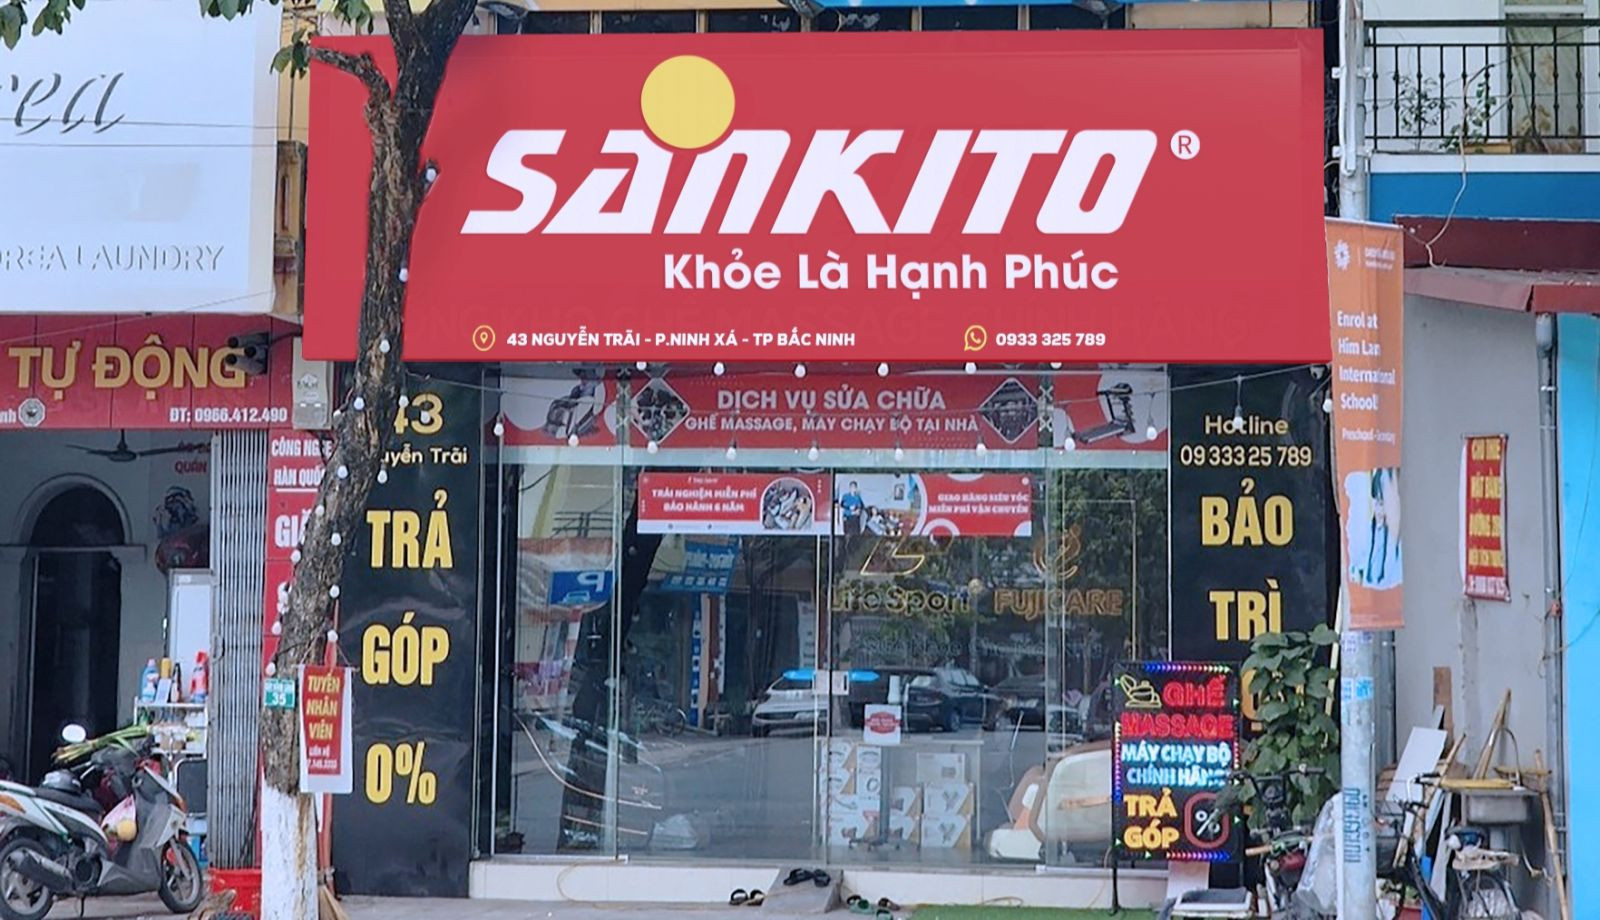 Sankito Ninh Xá - Bắc Ninh